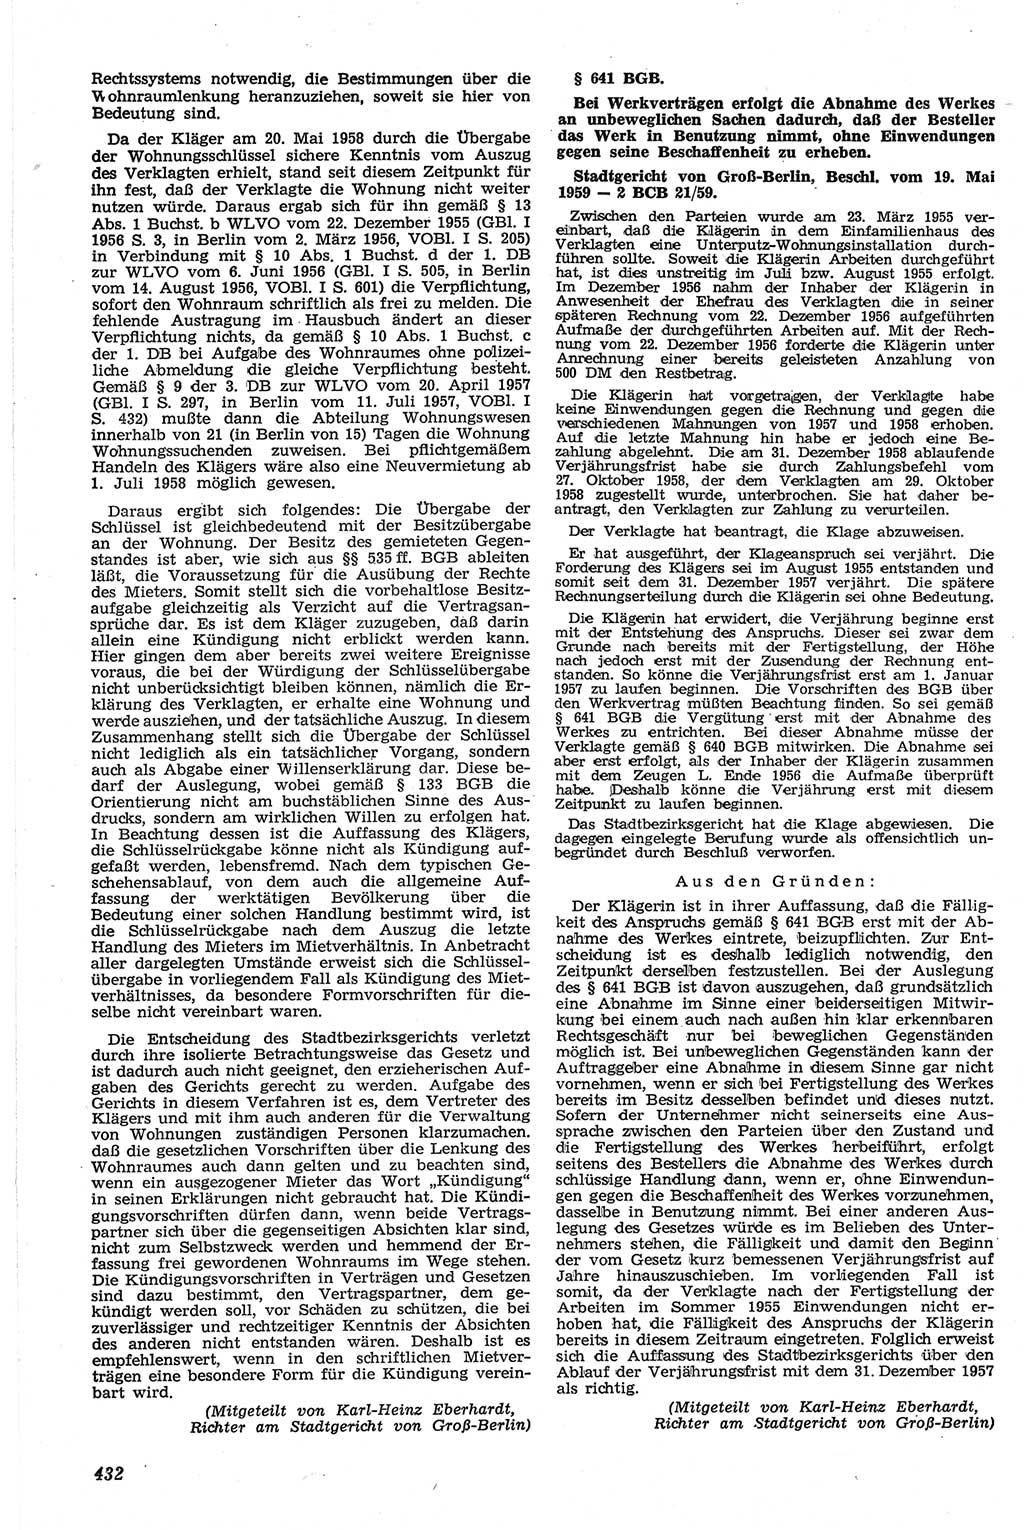 Neue Justiz (NJ), Zeitschrift für Recht und Rechtswissenschaft [Deutsche Demokratische Republik (DDR)], 13. Jahrgang 1959, Seite 432 (NJ DDR 1959, S. 432)